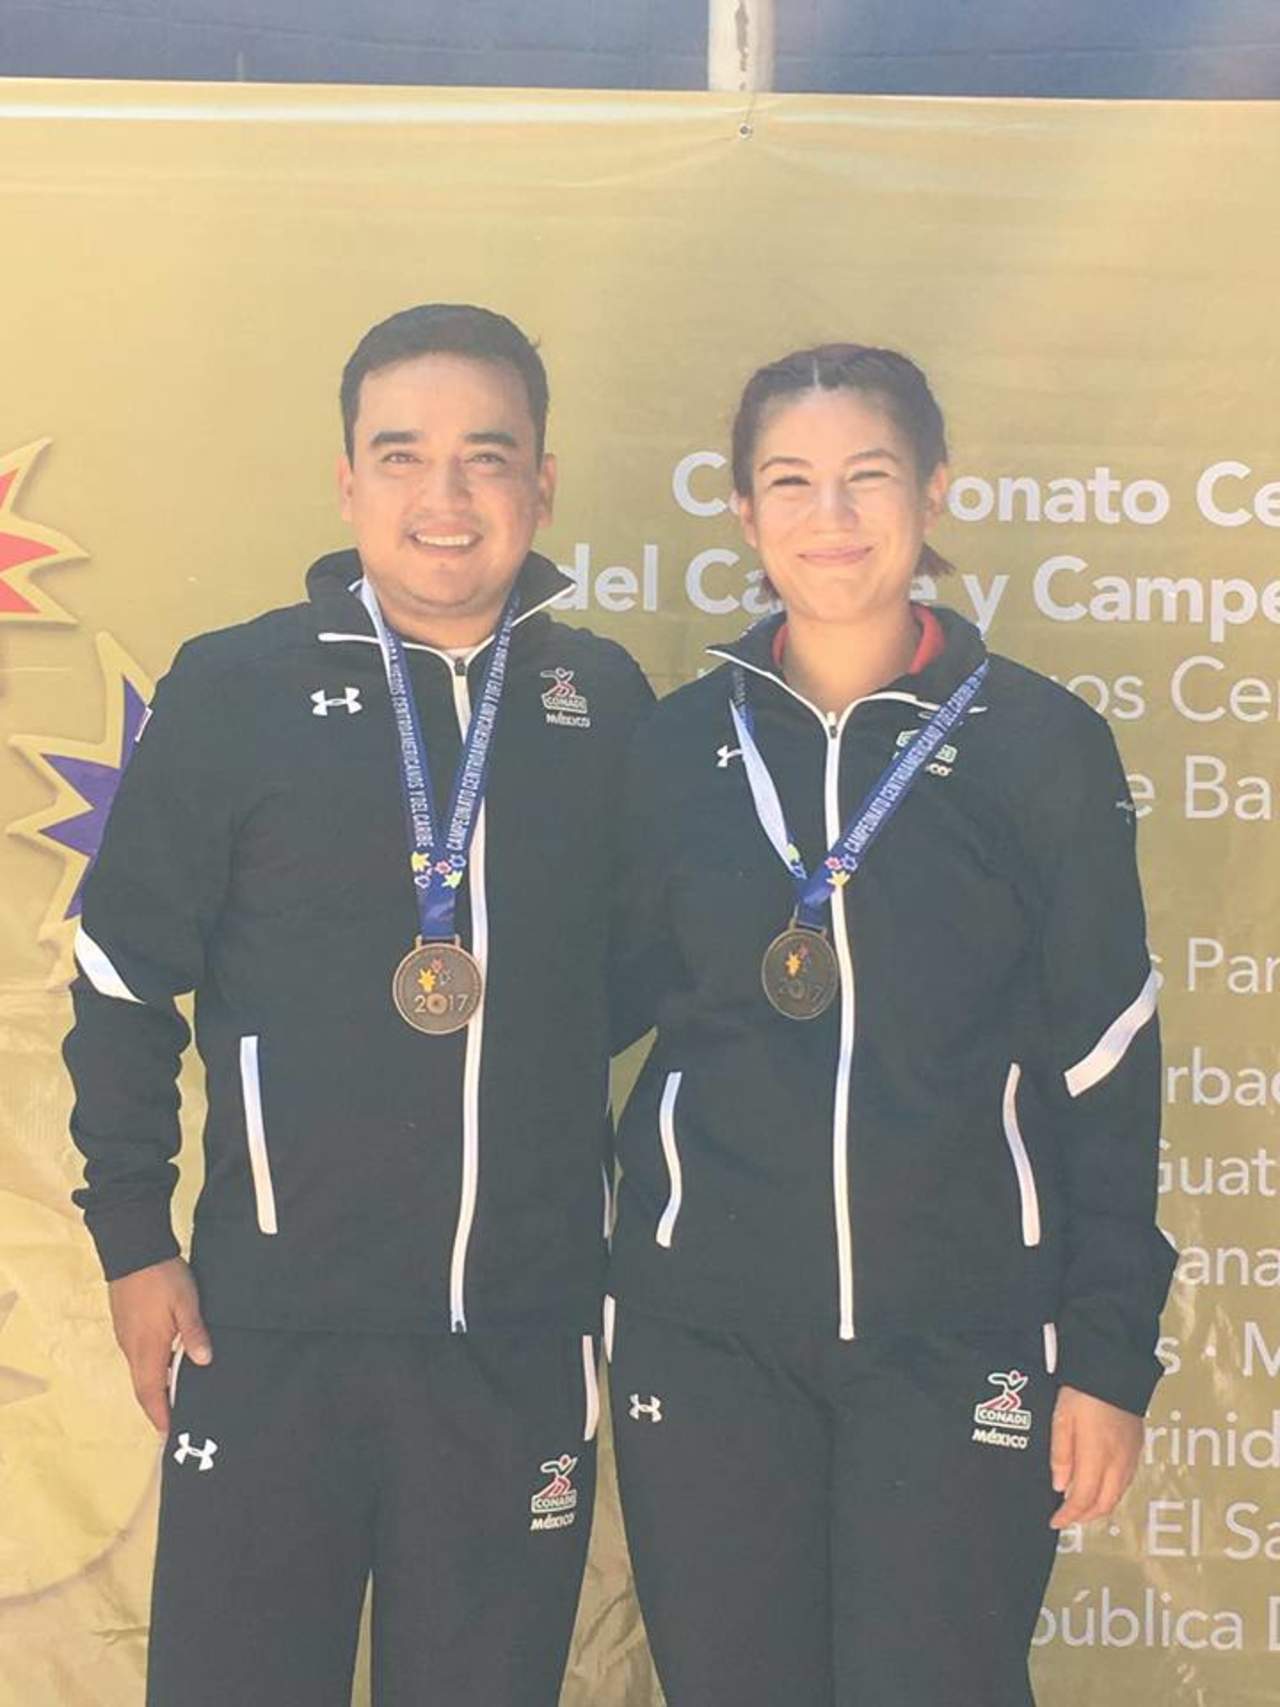 Volvió a subir al podio de medallistas del Campeonato Centroamericano que otorga plaza para los Juegos Centroamericanos y del Caribe de 2018. (ESPECIAL)